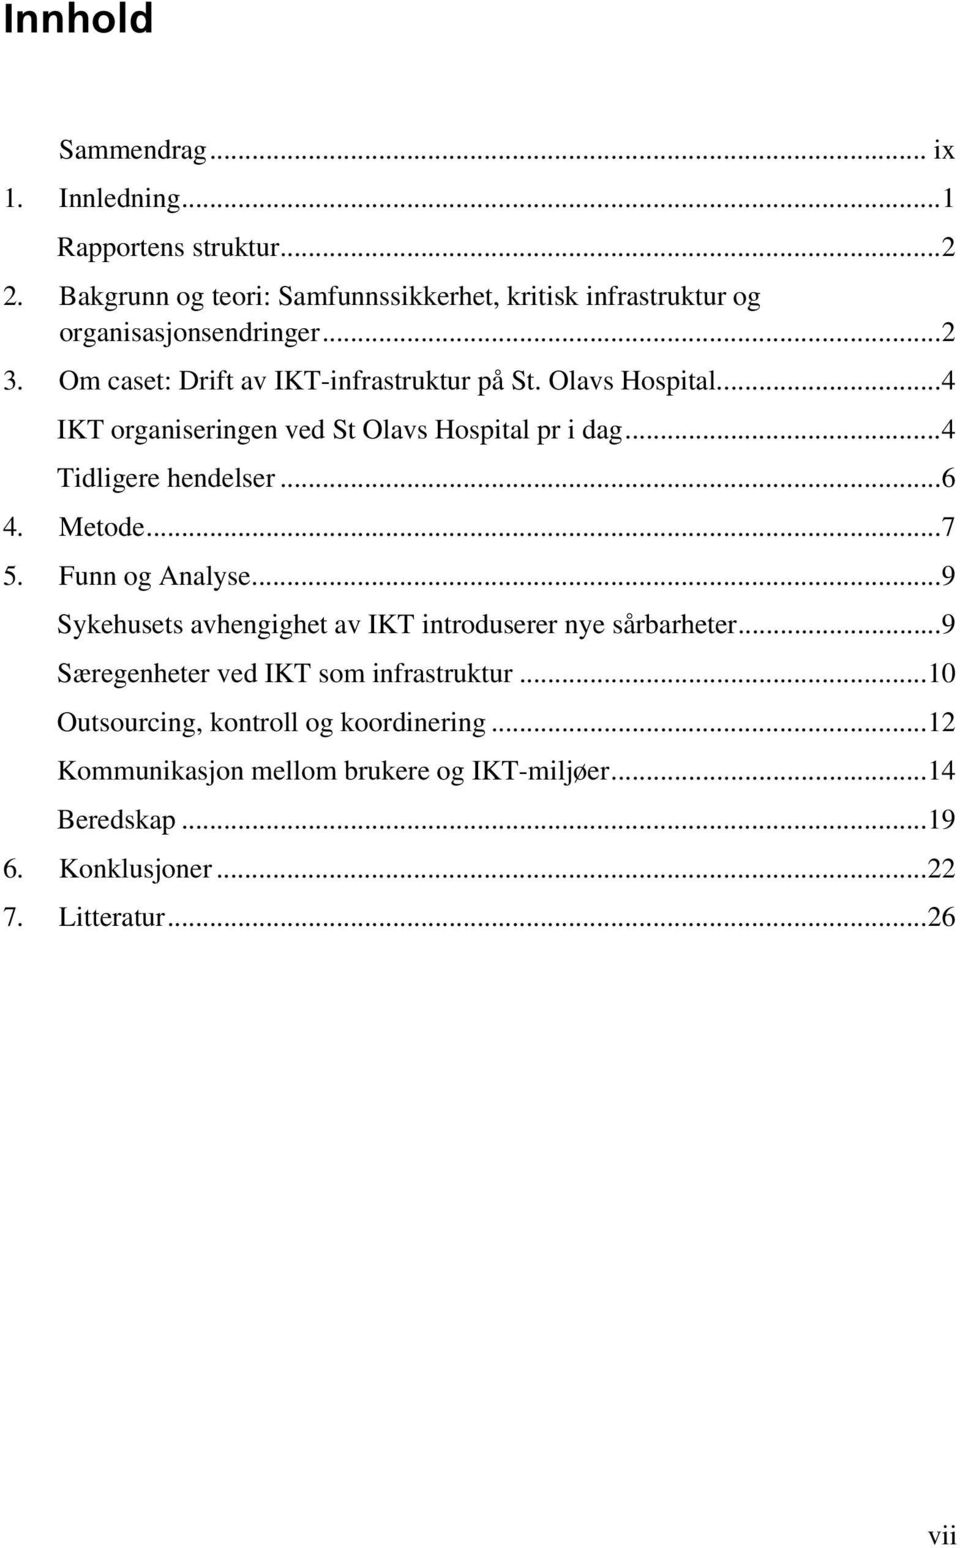 ... 4 IKT organiseringen ved St Olavs Hospital pr i dag... 4 Tidligere hendelser... 6 4. Metode... 7 5. Funn og Analyse.